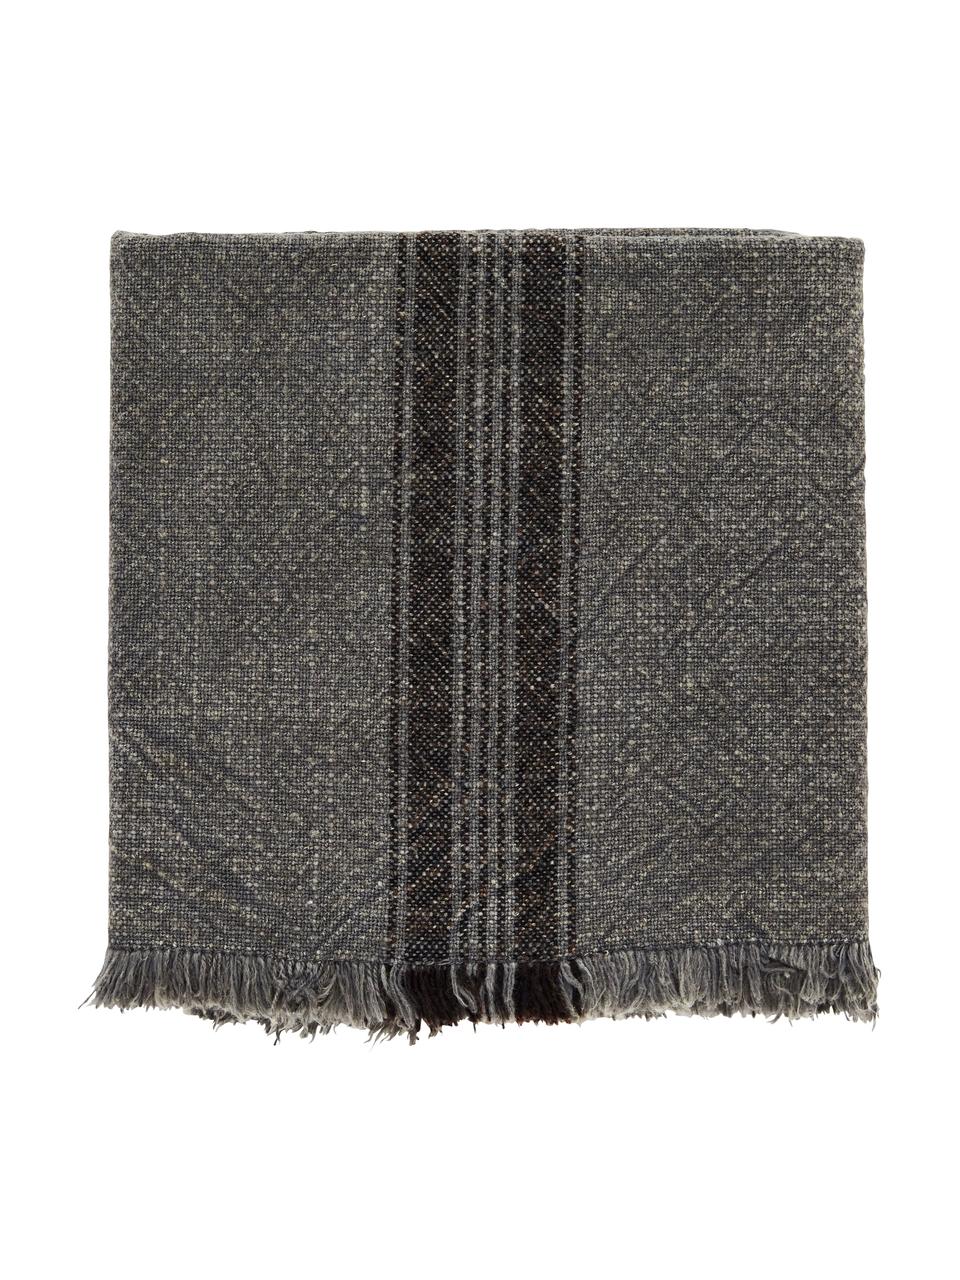 Pruhovaná bavlněná utěrka Ripo, 2 ks, 100 % bavlna, Tmavě šedá, melírovaná, černá, Š 50 cm, D 70 cm